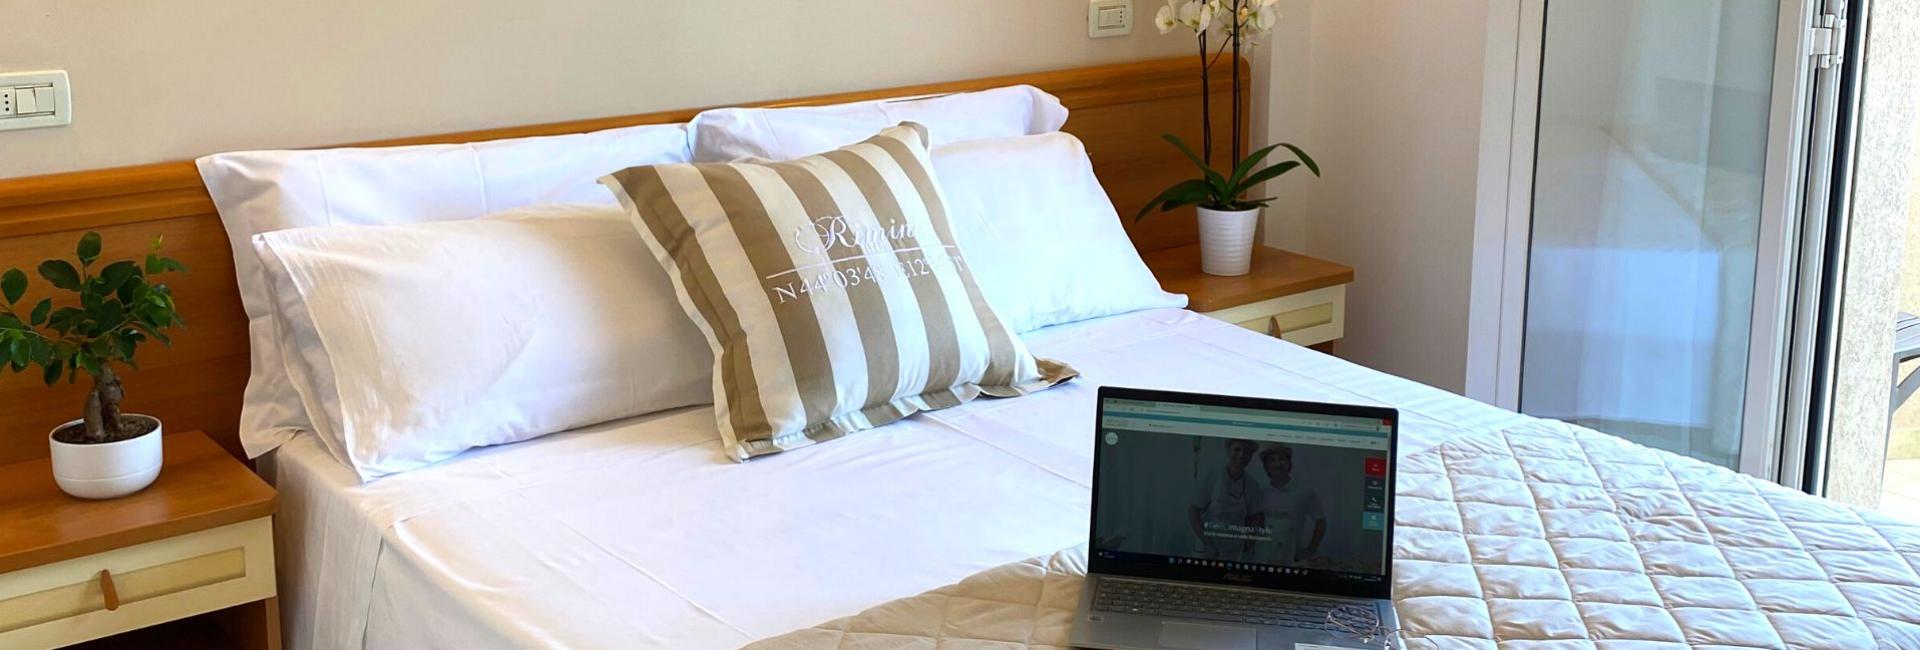 hotelapogeo it rimini-la-meta-ideale-per-un-weekend-di-pasqua-al-mare 007